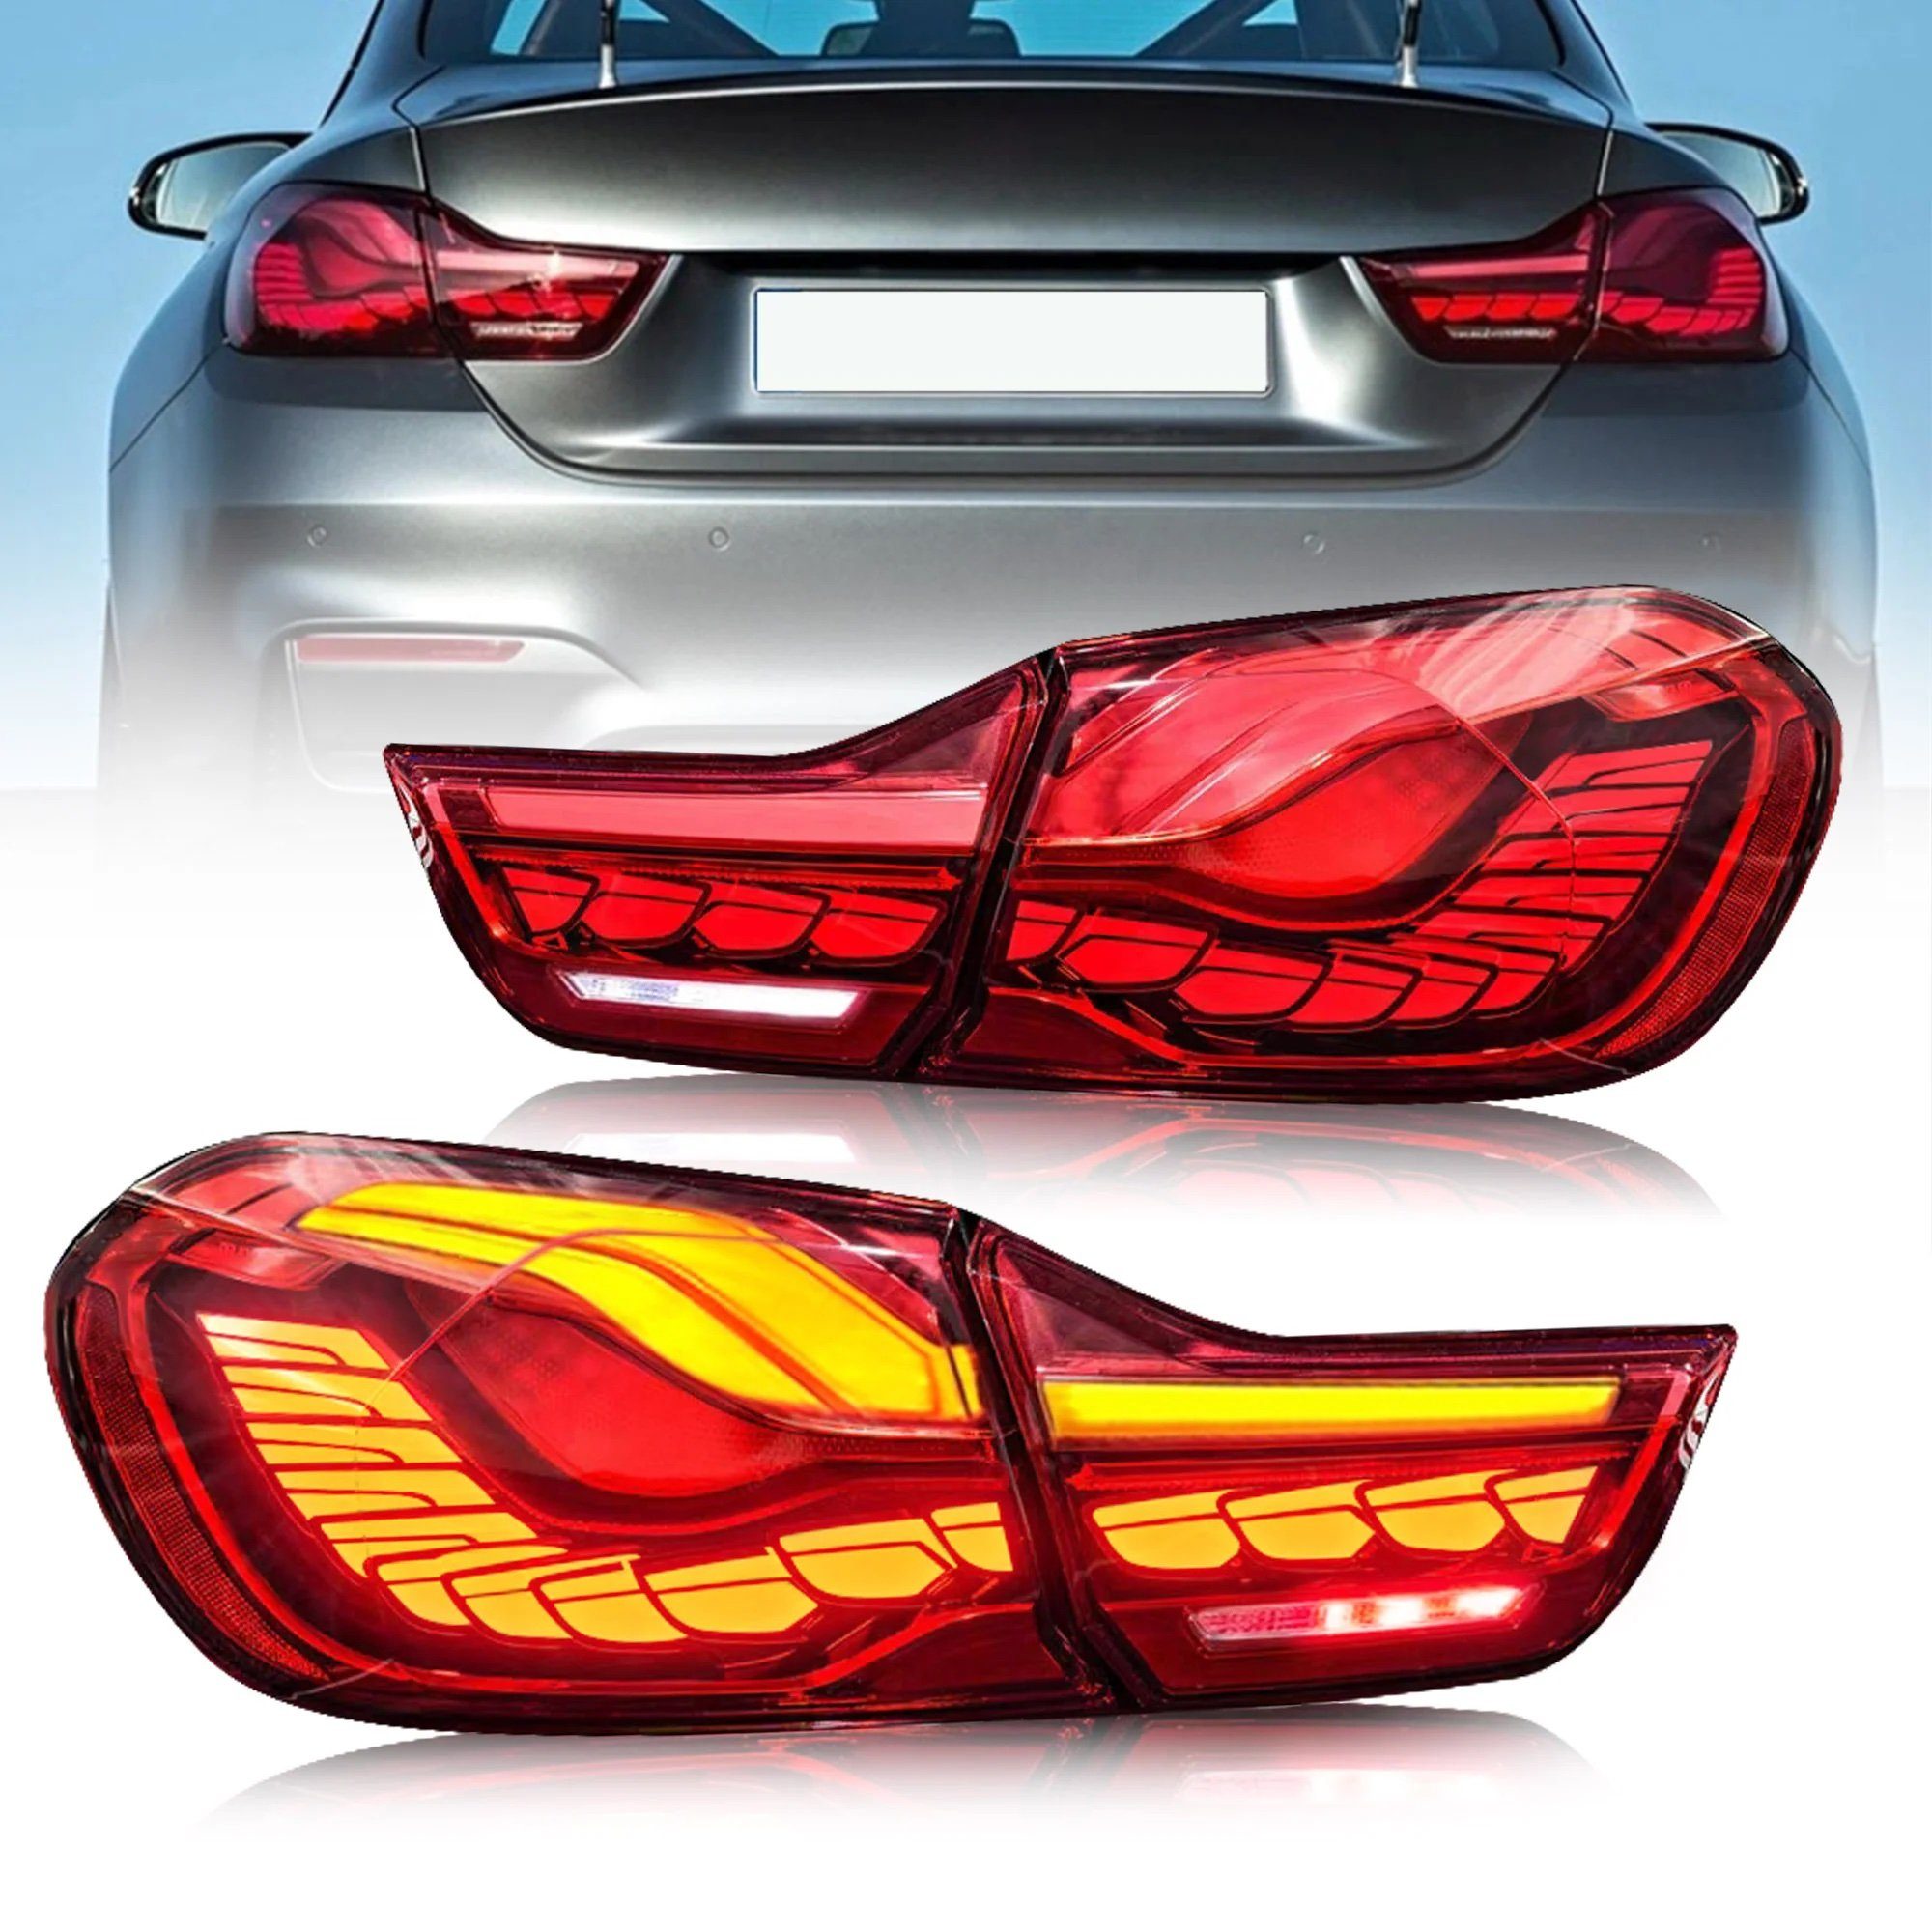 LLCTOOLS Rückleuchte Hell leuchtende LED Rückleuchte mit E-Prüfzeichen passend für BMW, 4er F32 Coupe, F33 Cabrio, F36 Gran Coupe, F82 M4 (2013-2021), Rücklicht, Bremslicht, Nebelschlussleuchte, Blinklicht und Rückfahrlicht, Voll LED, Dynamischer Blinker, mit Lichtanimation beim Entriegeln des Fahrzeugs